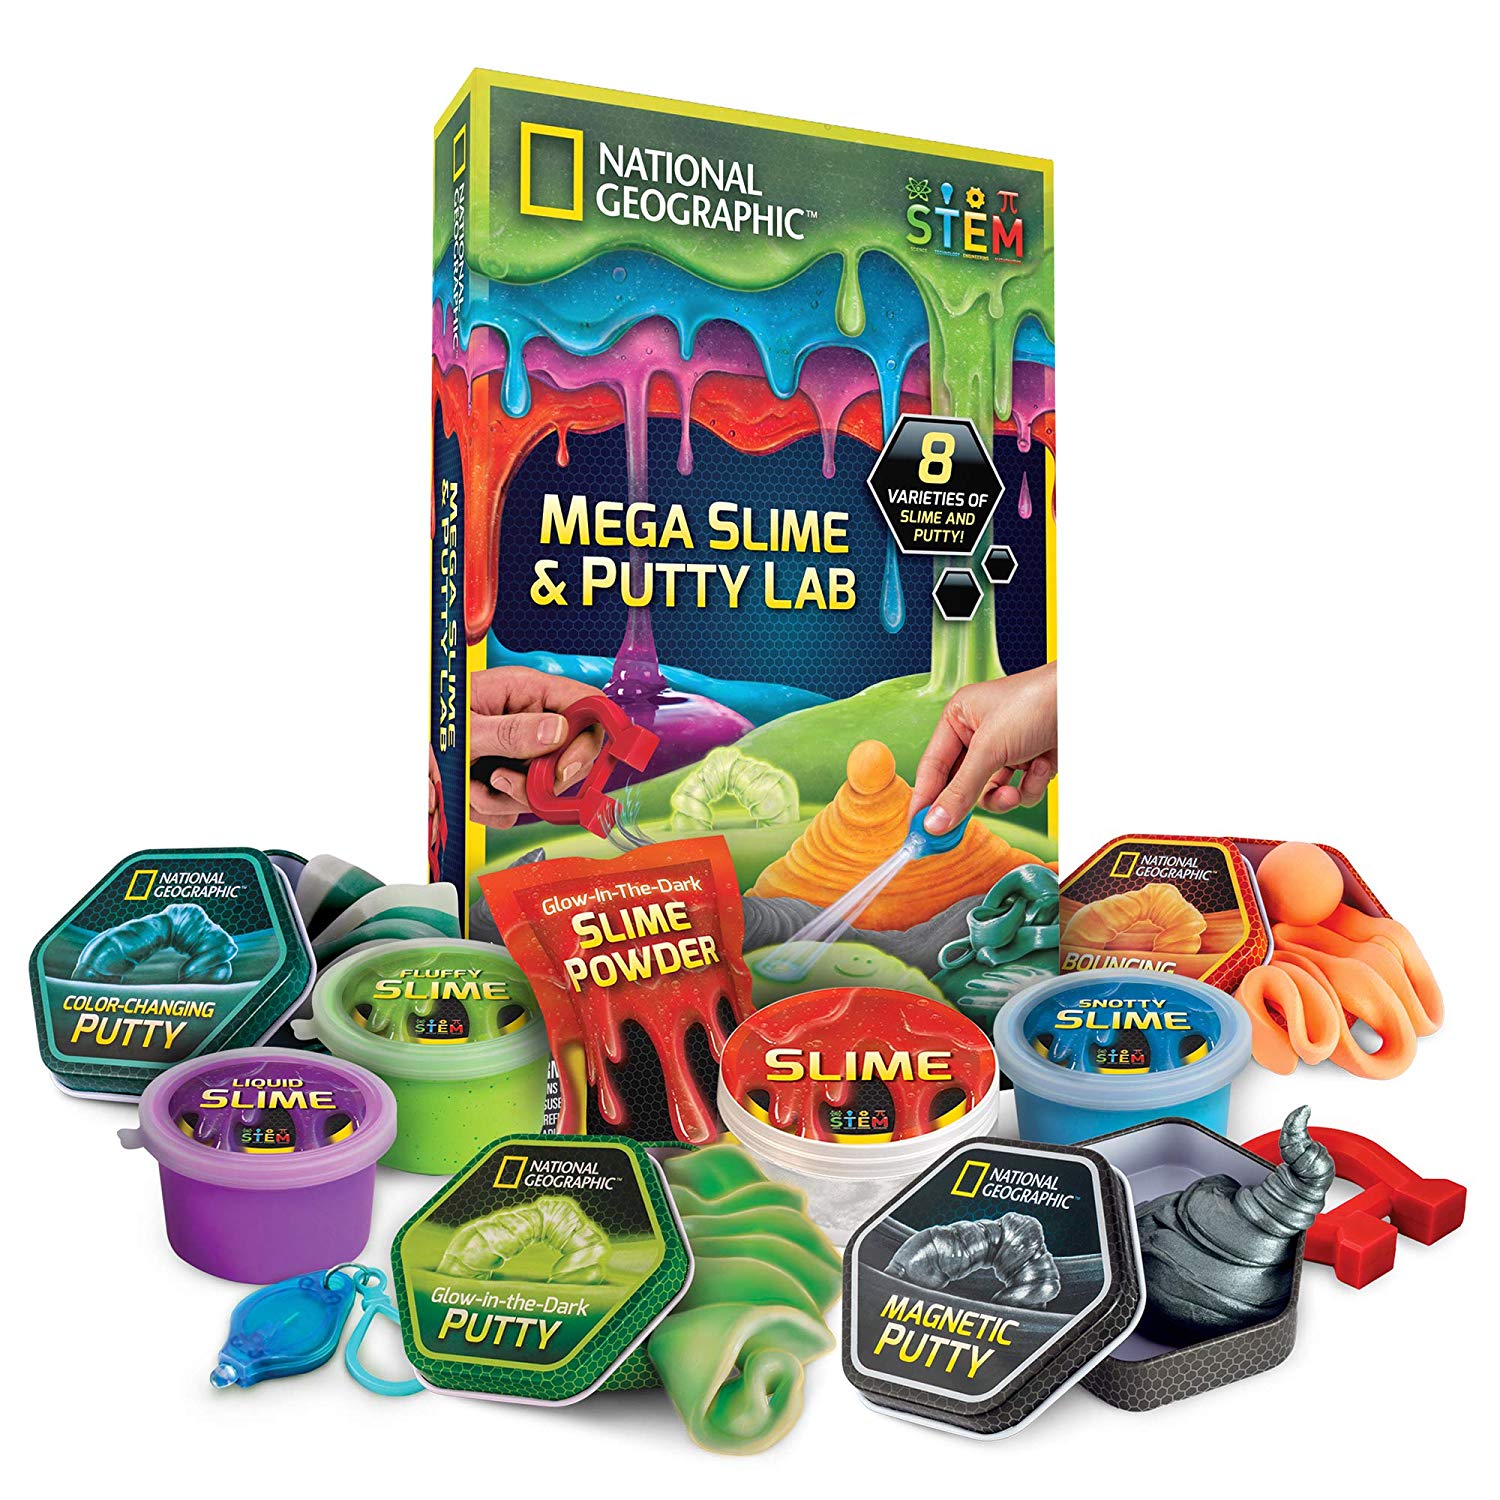 Gummy Slime Kids Fun Fête Sac Remplissage Putty Goo baignoire Science Toy anniversaire cadeau UK 